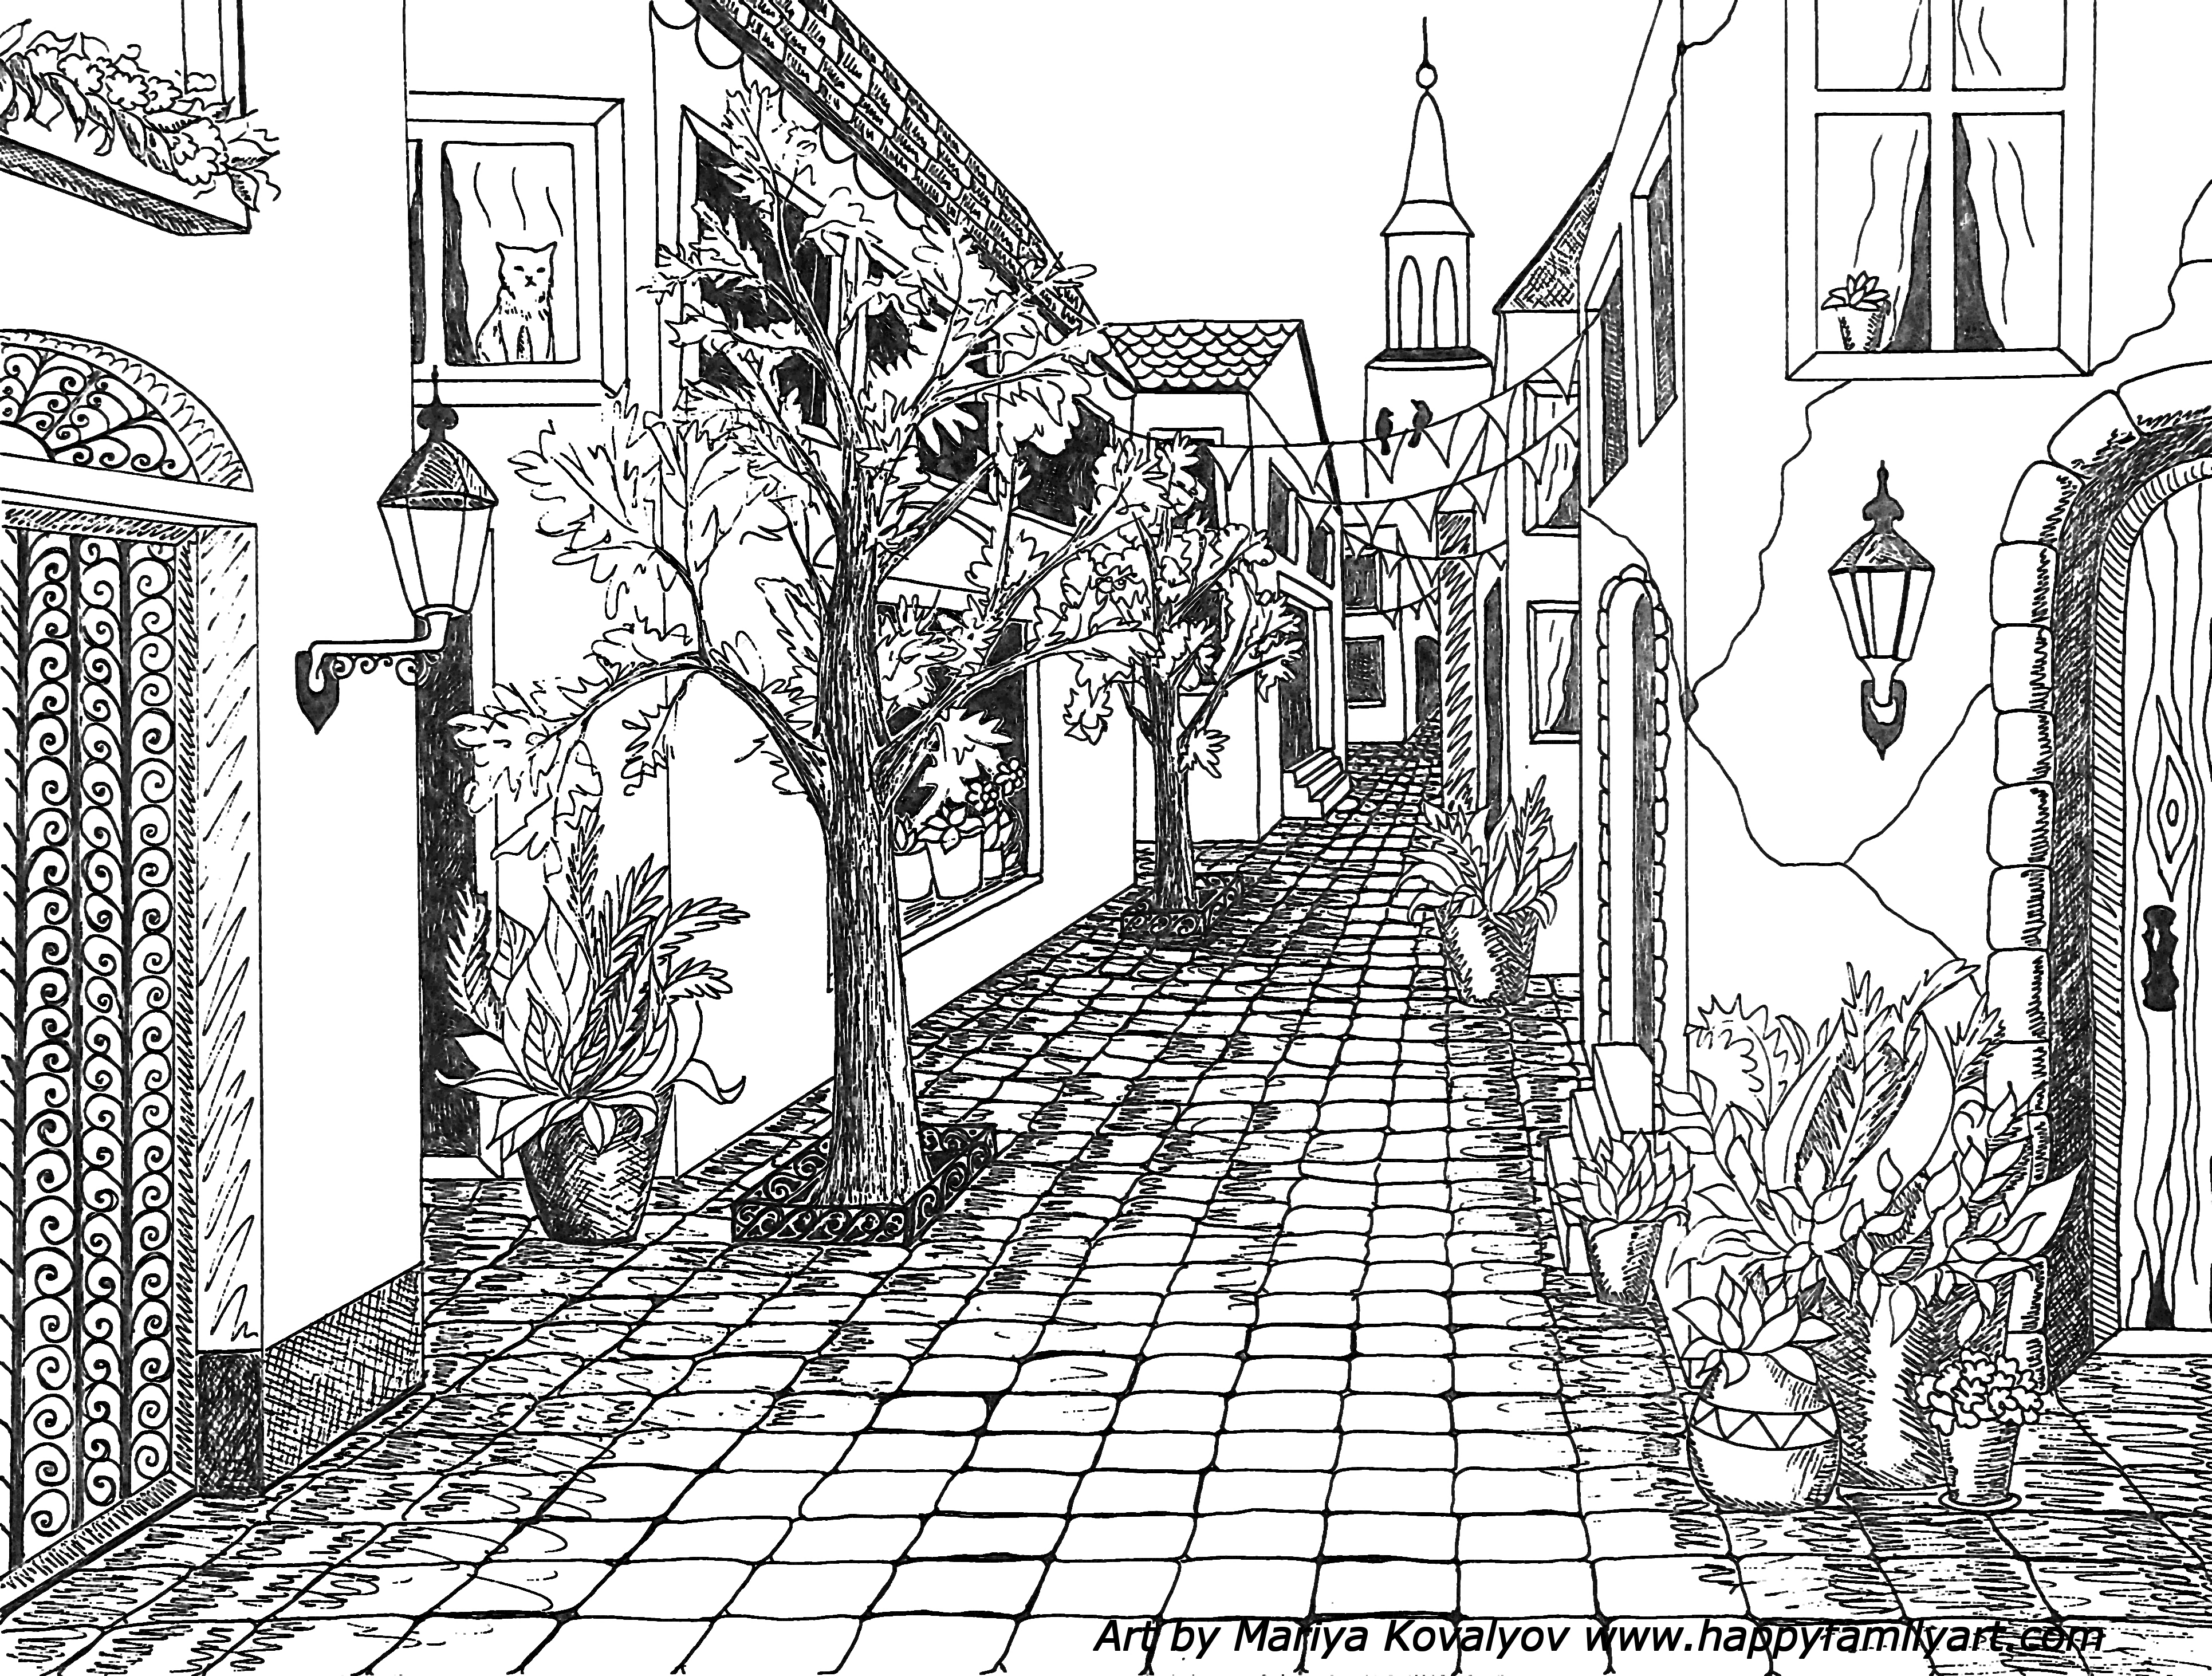 Town Drawing Images - Free Download on Freepik